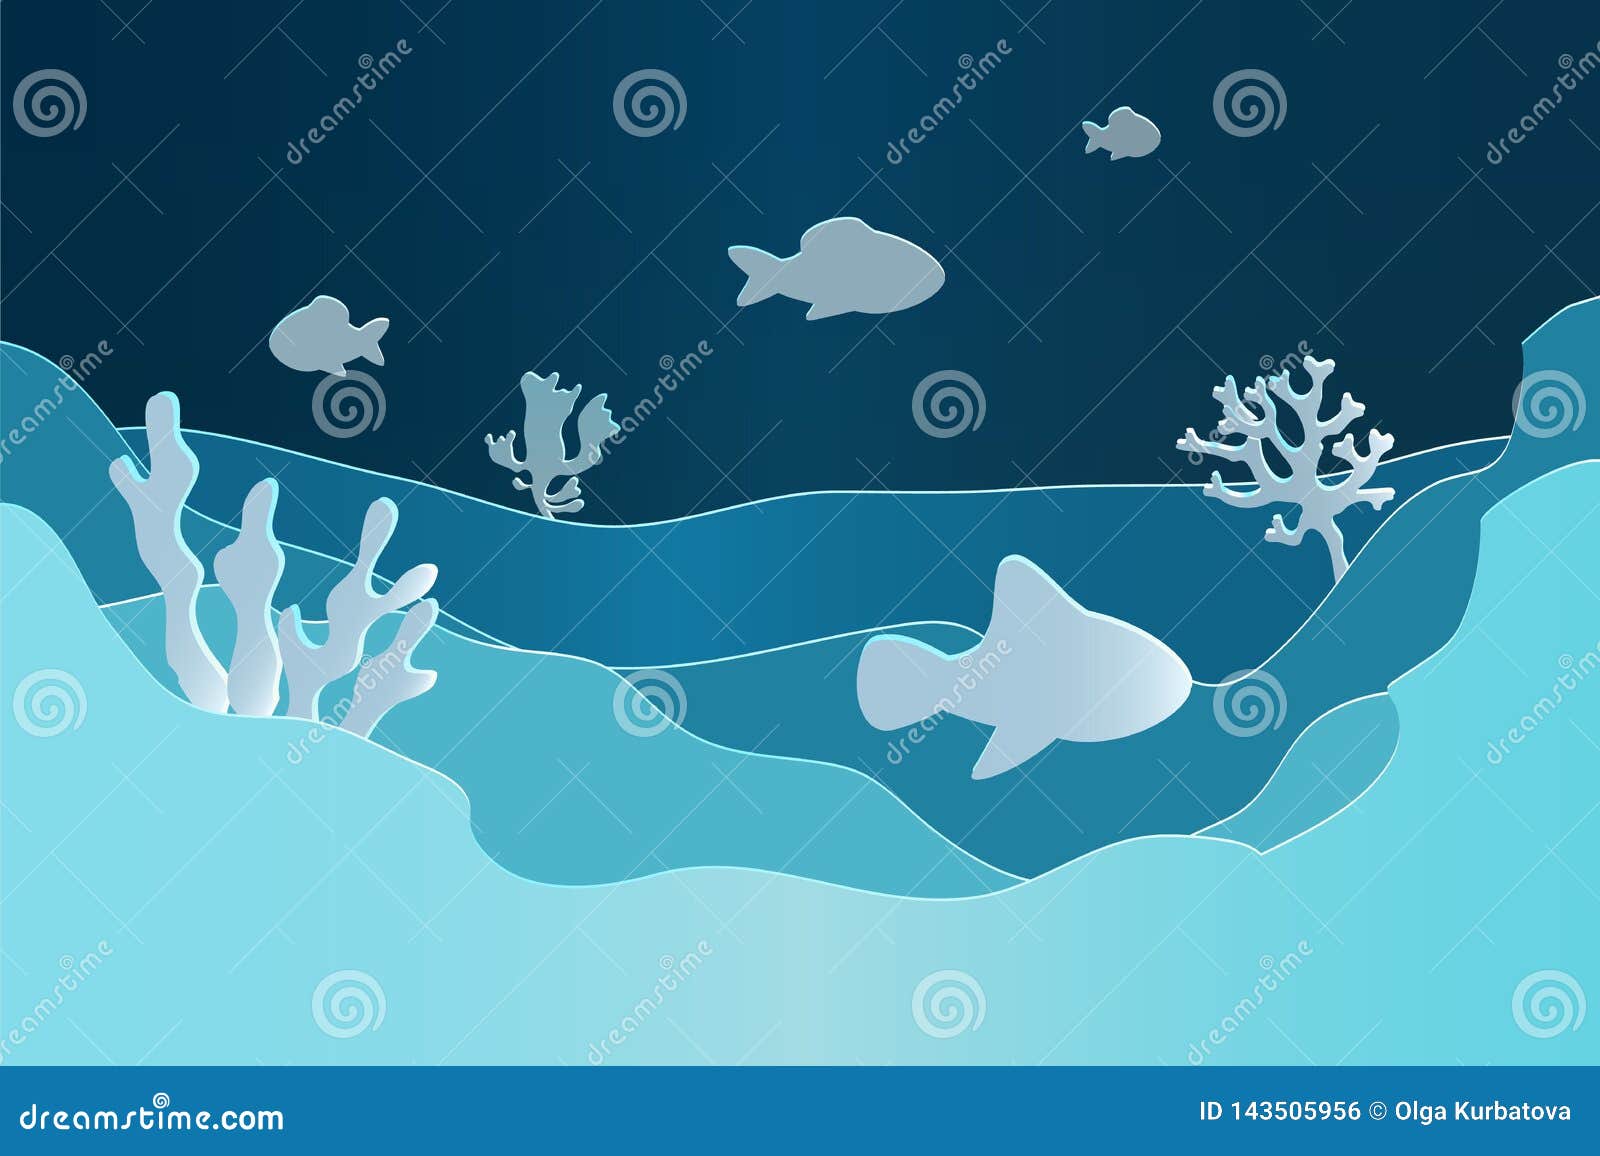 paper underwater. seascape seafloor, undersea with seaweed. dark saltwater with corals silhouettes. ocean reef bottom